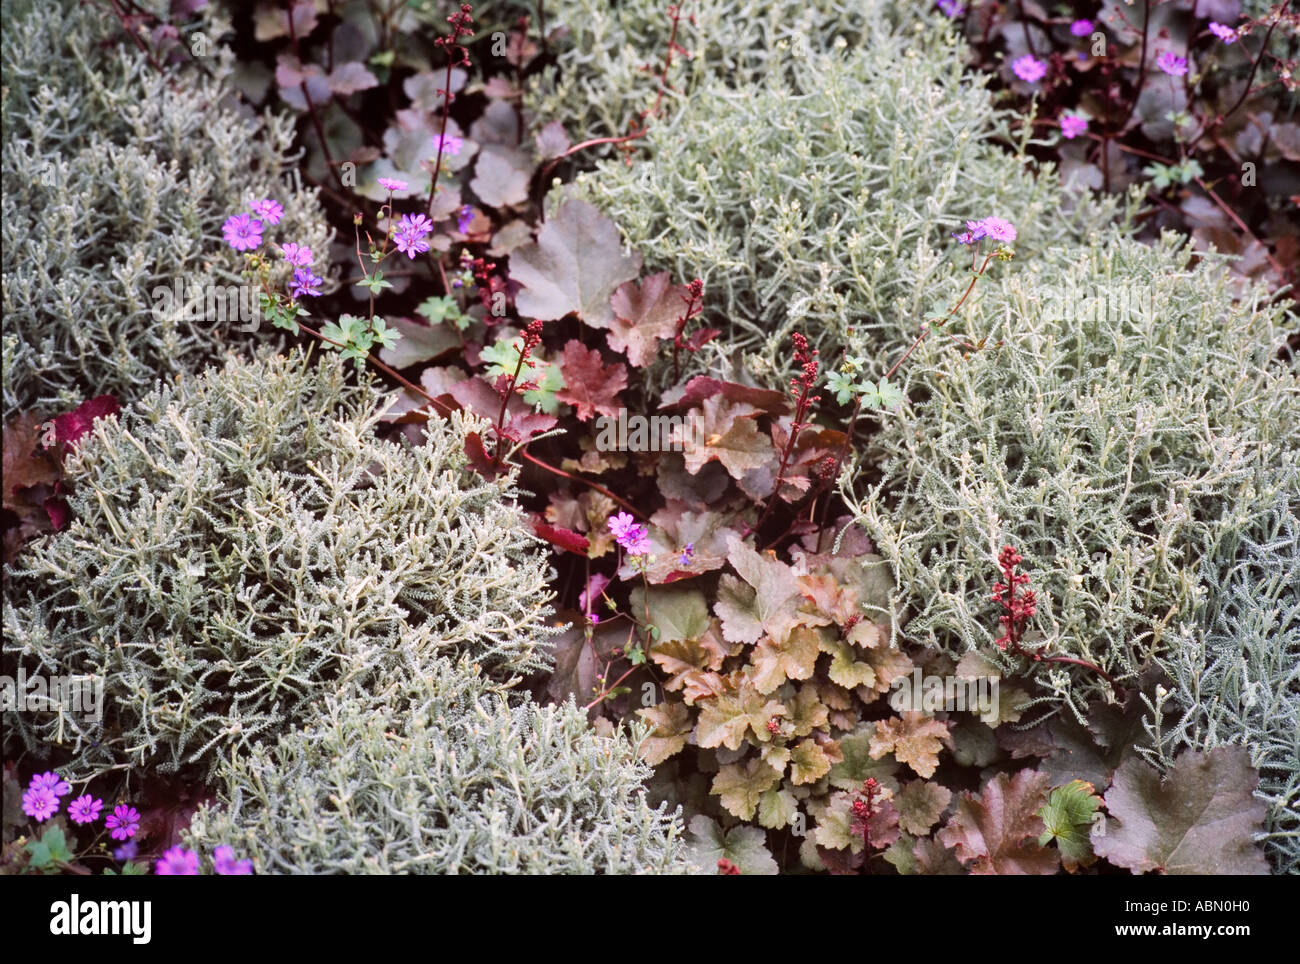 Geranium plants used in borders Stock Photo